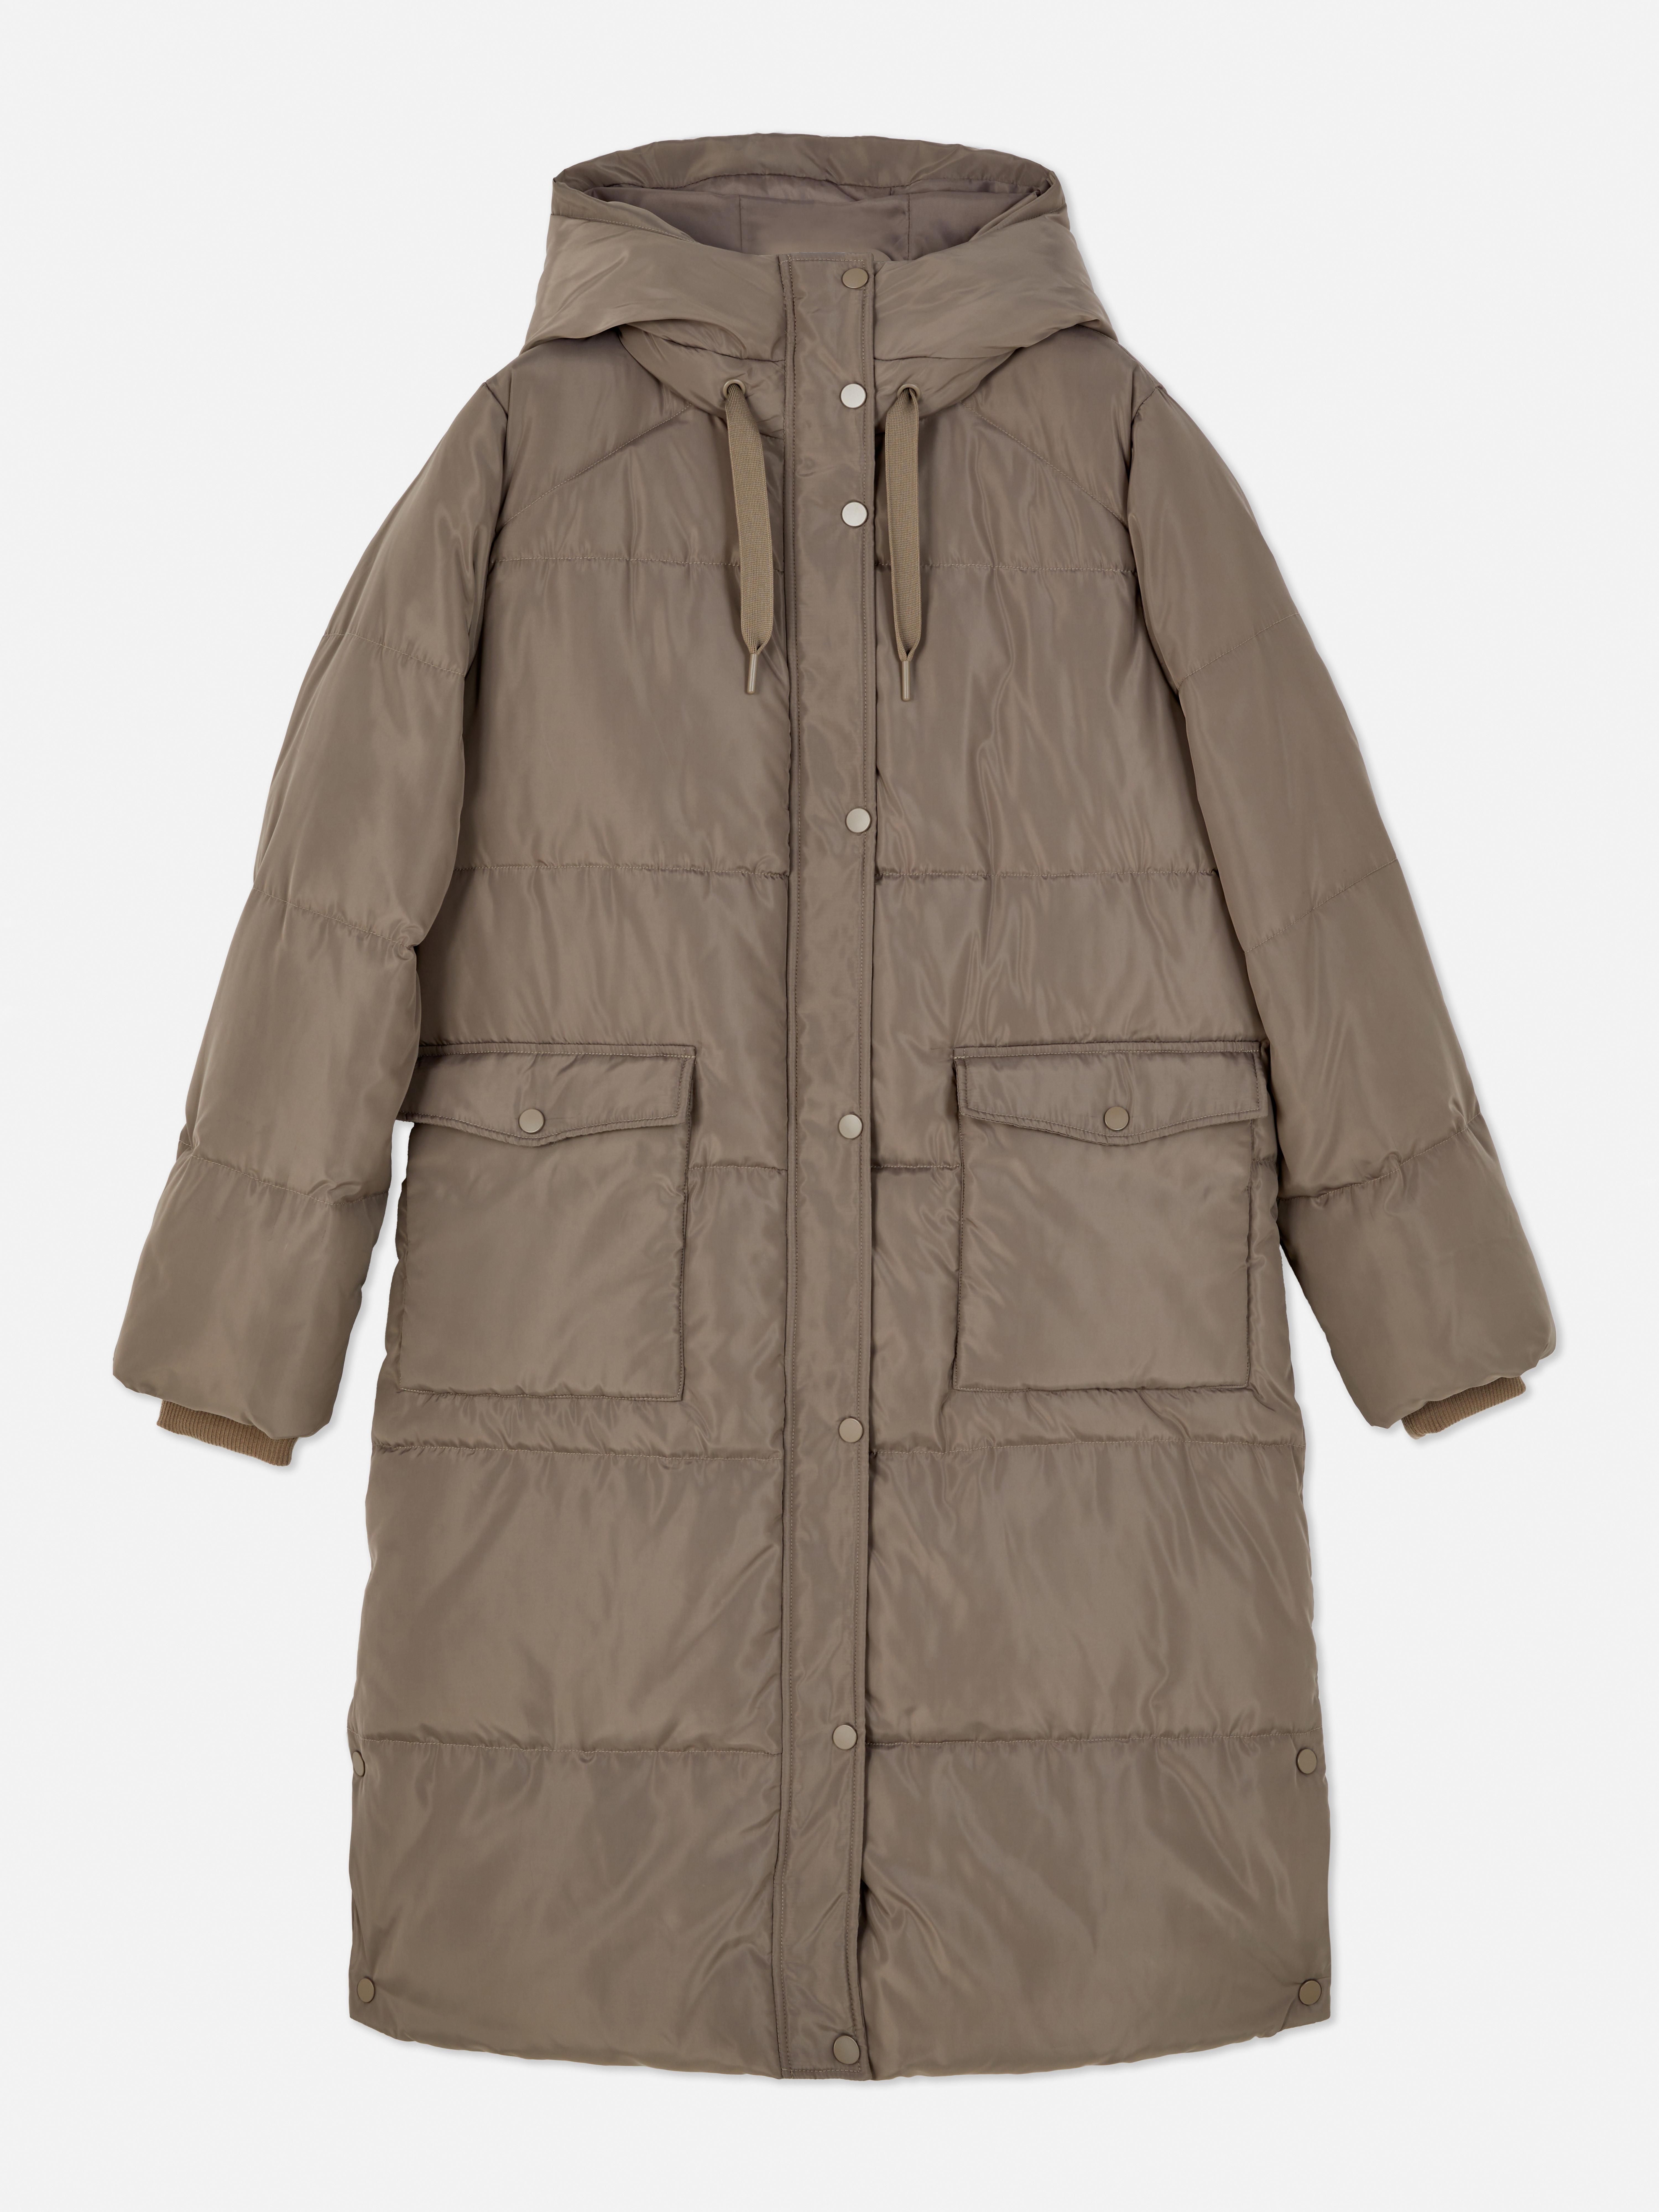 Plumífero con capucha | Abrigos y chaquetas para mujer | Ropa para mujer | Nuestra línea moda femenina | Todos productos Primark | Primark España